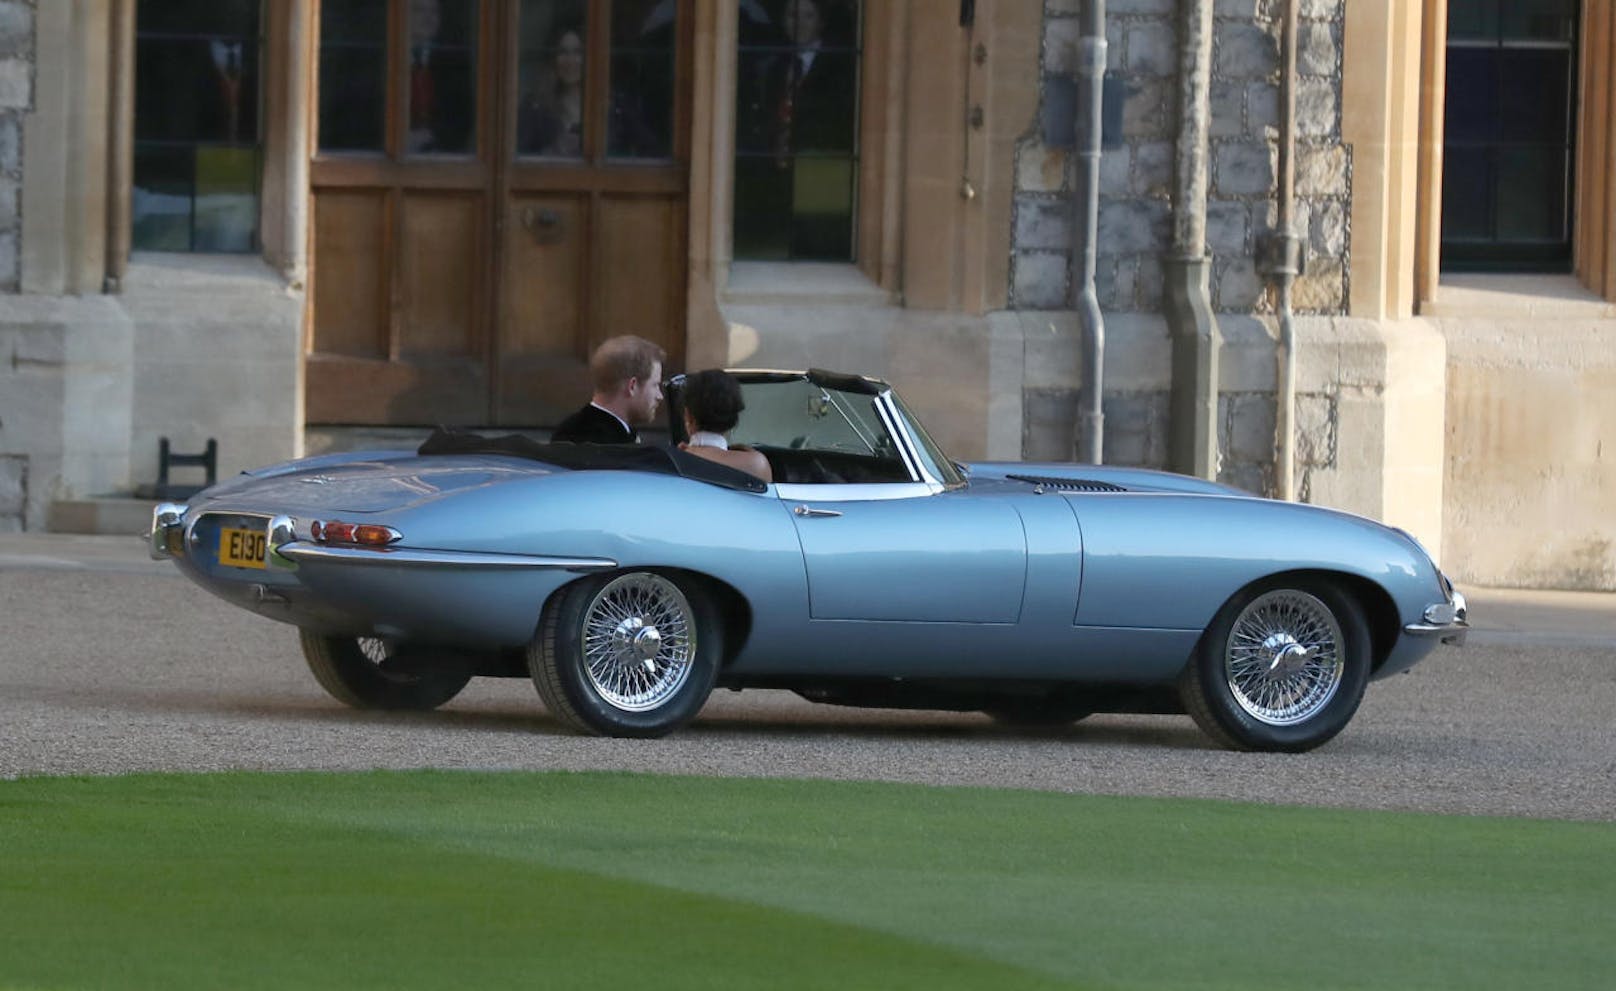 Die Fahrt absolvierte das Paar in einem Jaguar E-Type Concept Zero. Das Auto wurde ursprünglich 1968 hergestellt und wurde zu einem Elektroauto umgebaut.